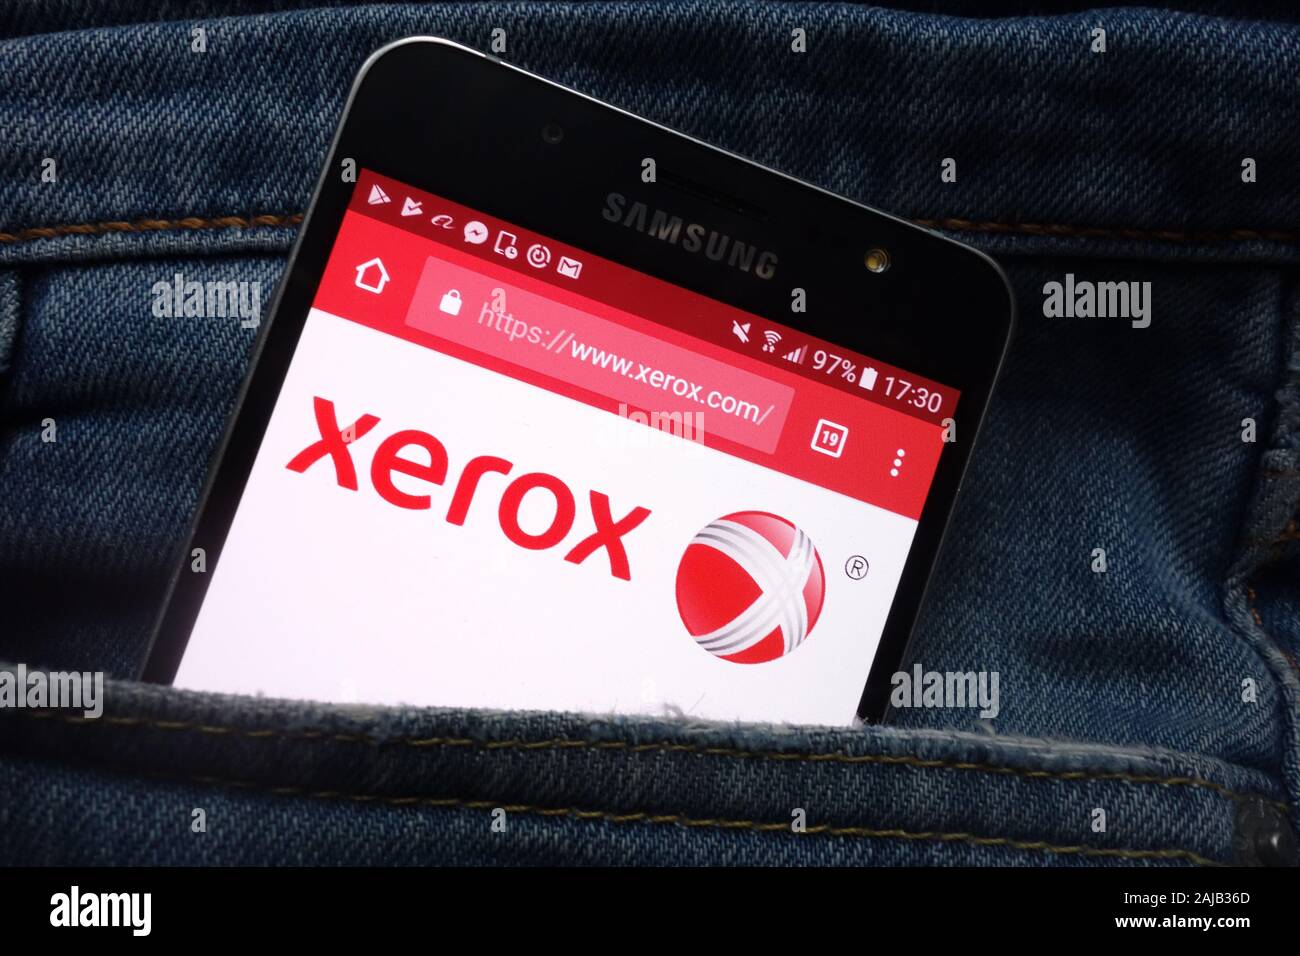 Xerox website displayed on Samsung smartphone hidden in jeans pocket Stock Photo